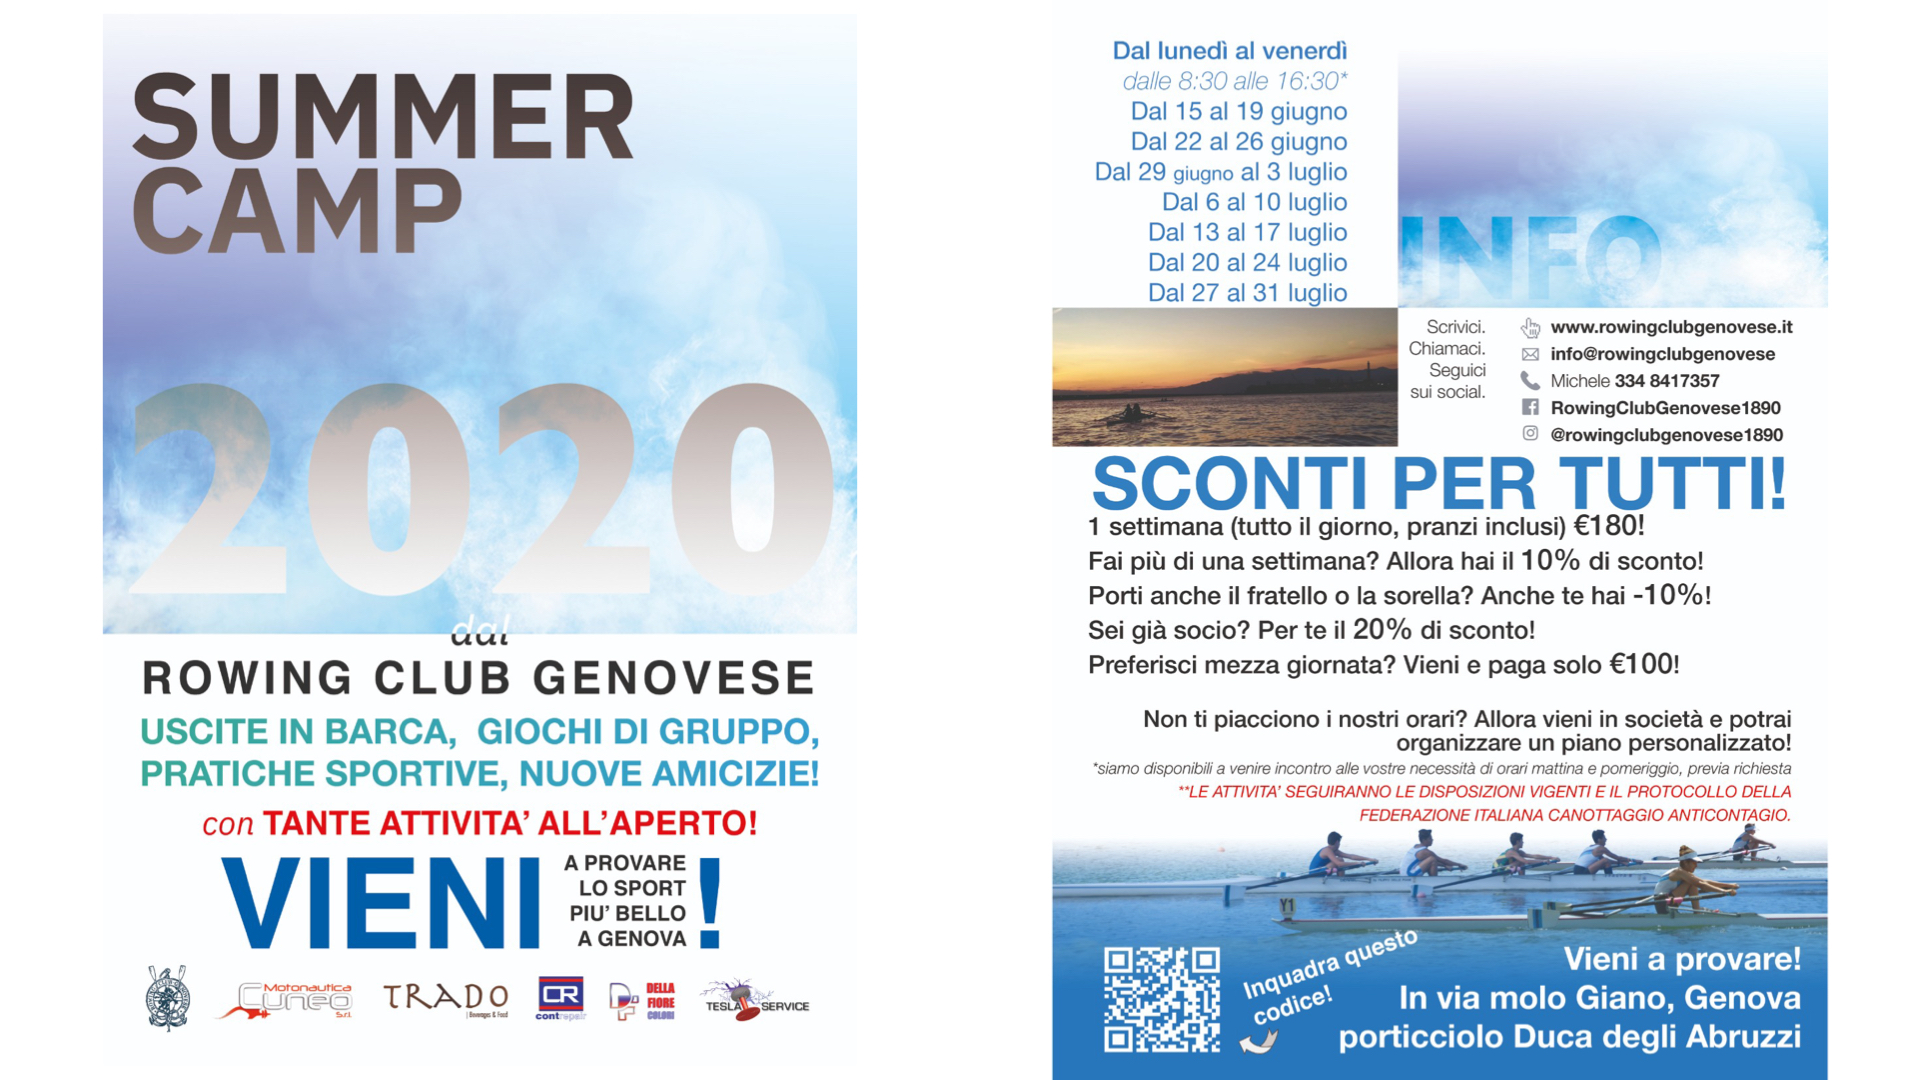 Al momento stai visualizzando SUMMER CAMP 2020 al Rowing Club Genovese